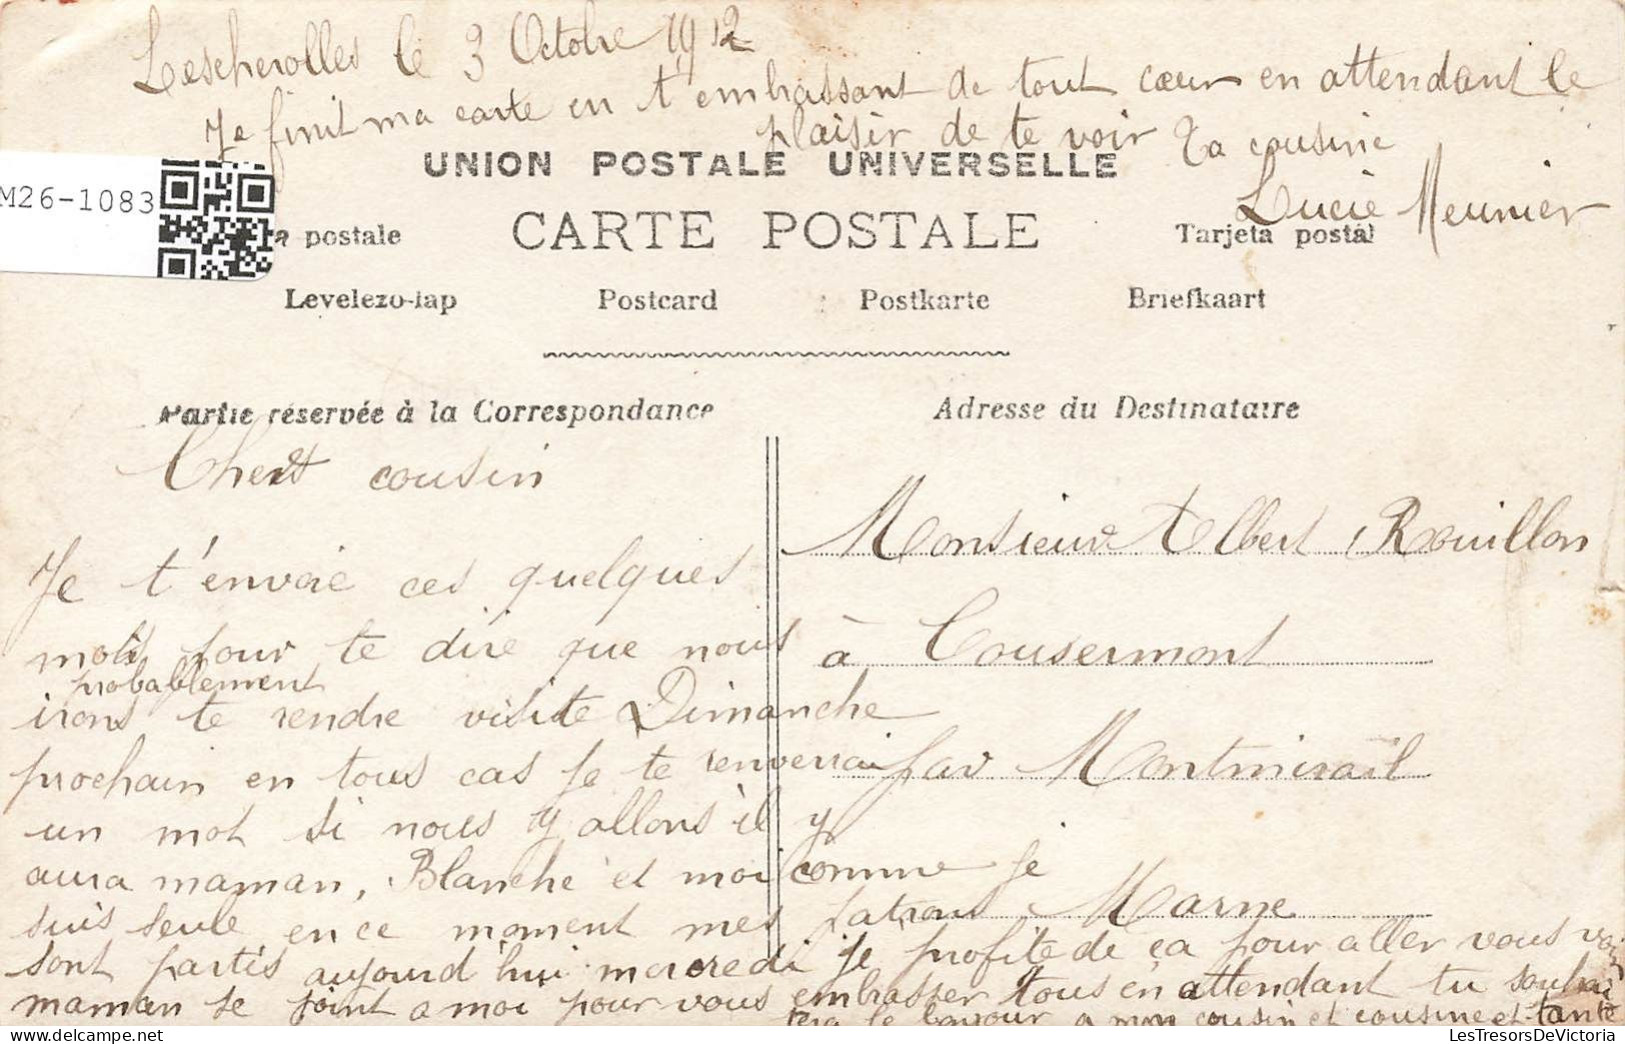 COUPLE - Monsieur Offre Une Fleur à Madame - Carte Postale Ancienne - Couples